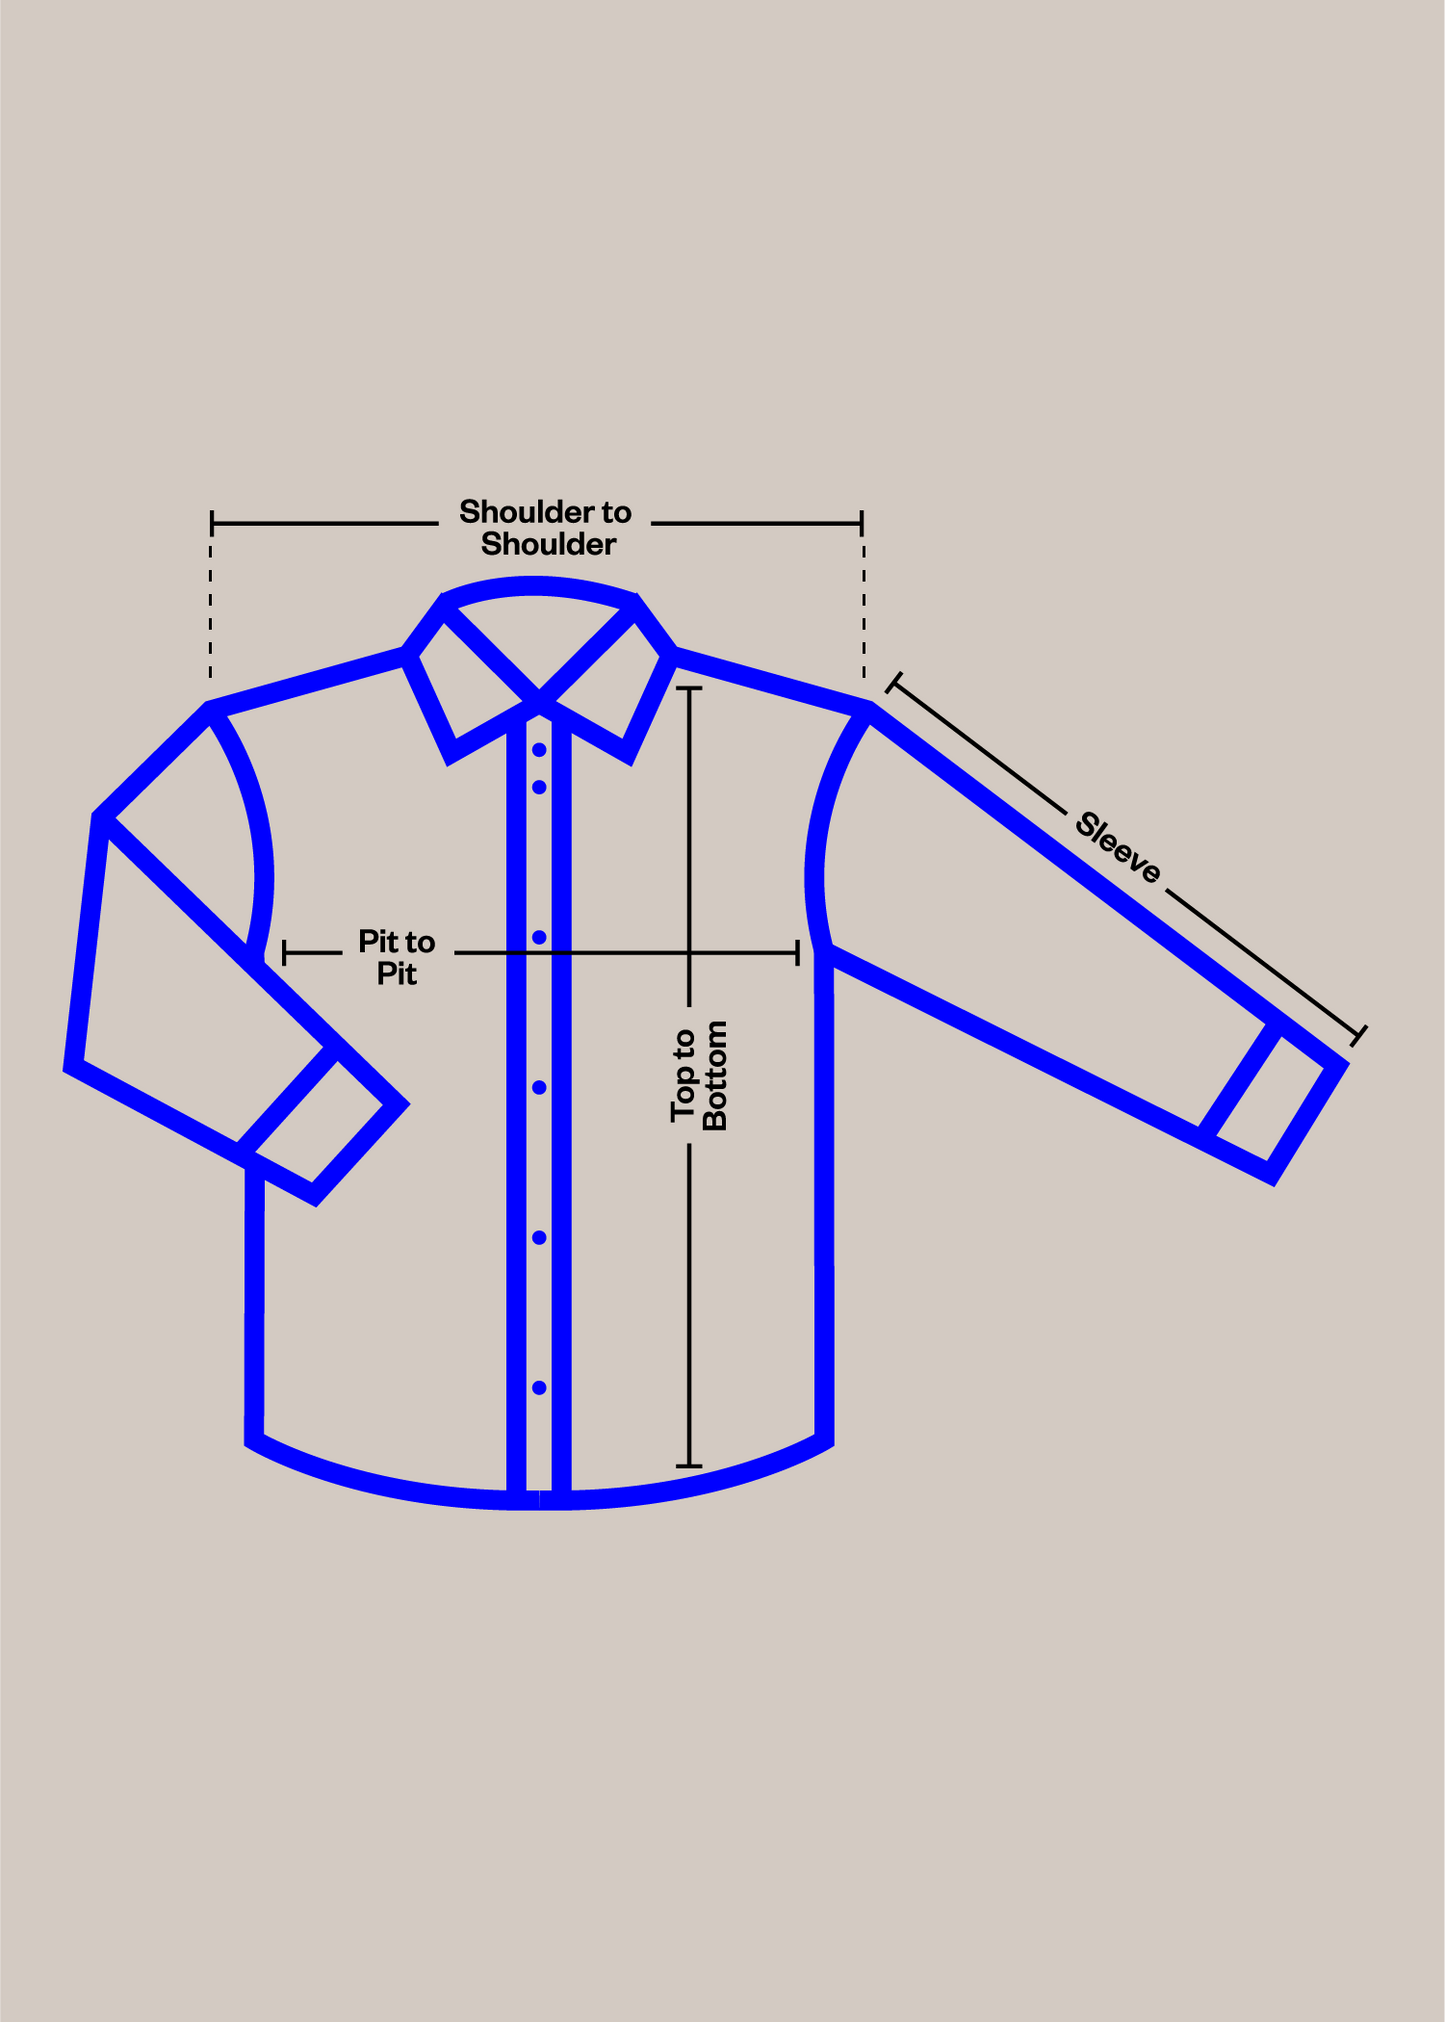 1980s Windbreaker Sportswear Down Puffer Vest Size L/XL